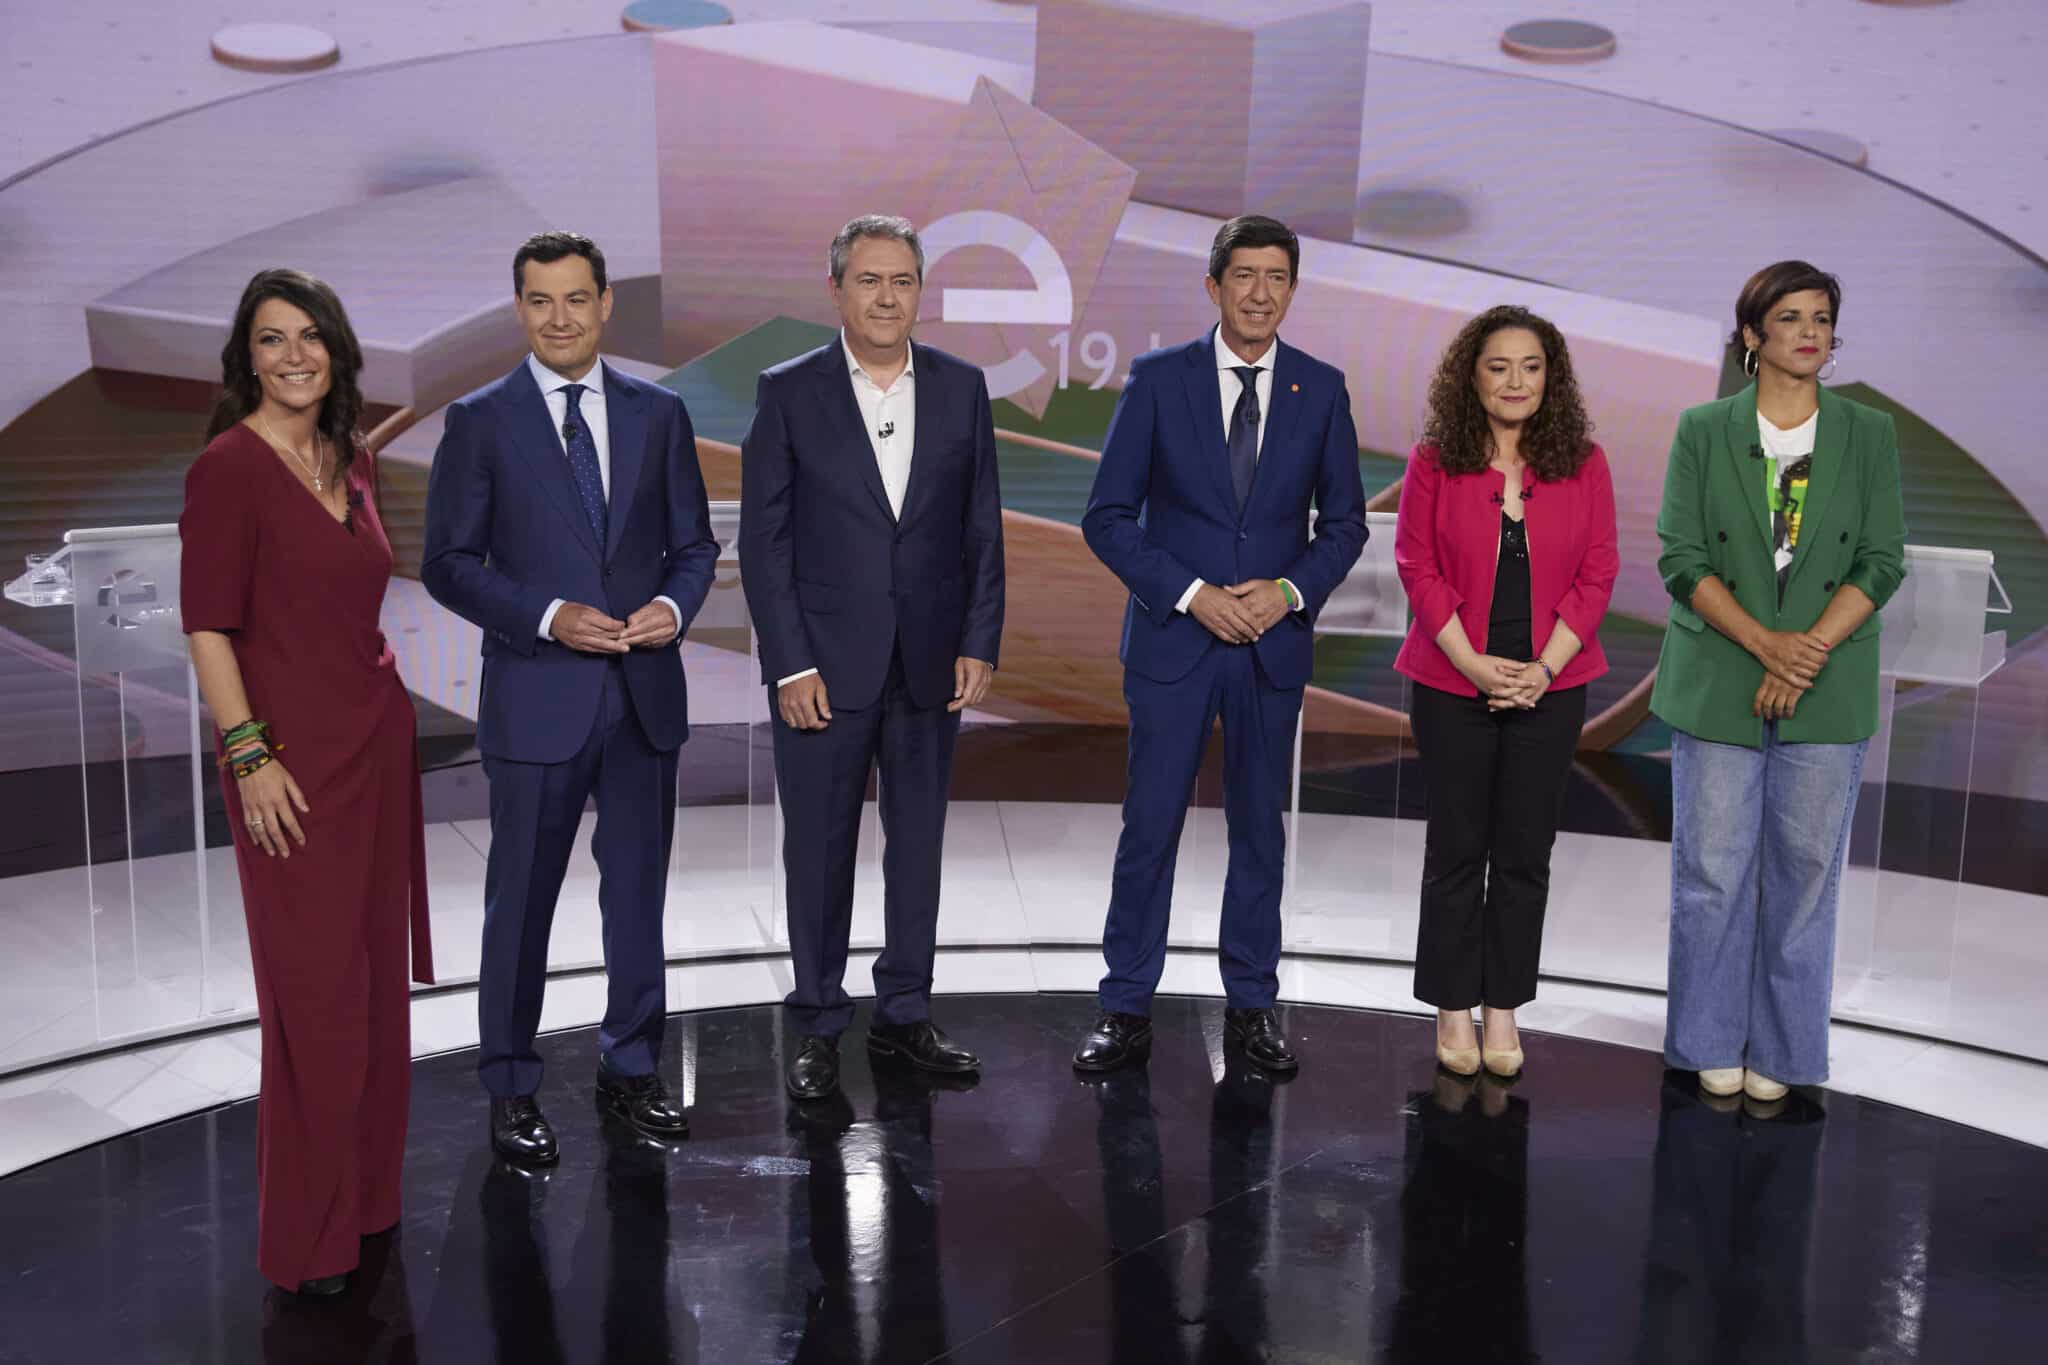 Olona, Moreno Bonilla, Espadas, Marín, Nieto y Rodríguez antes de empezar el debate en Canal Sur.